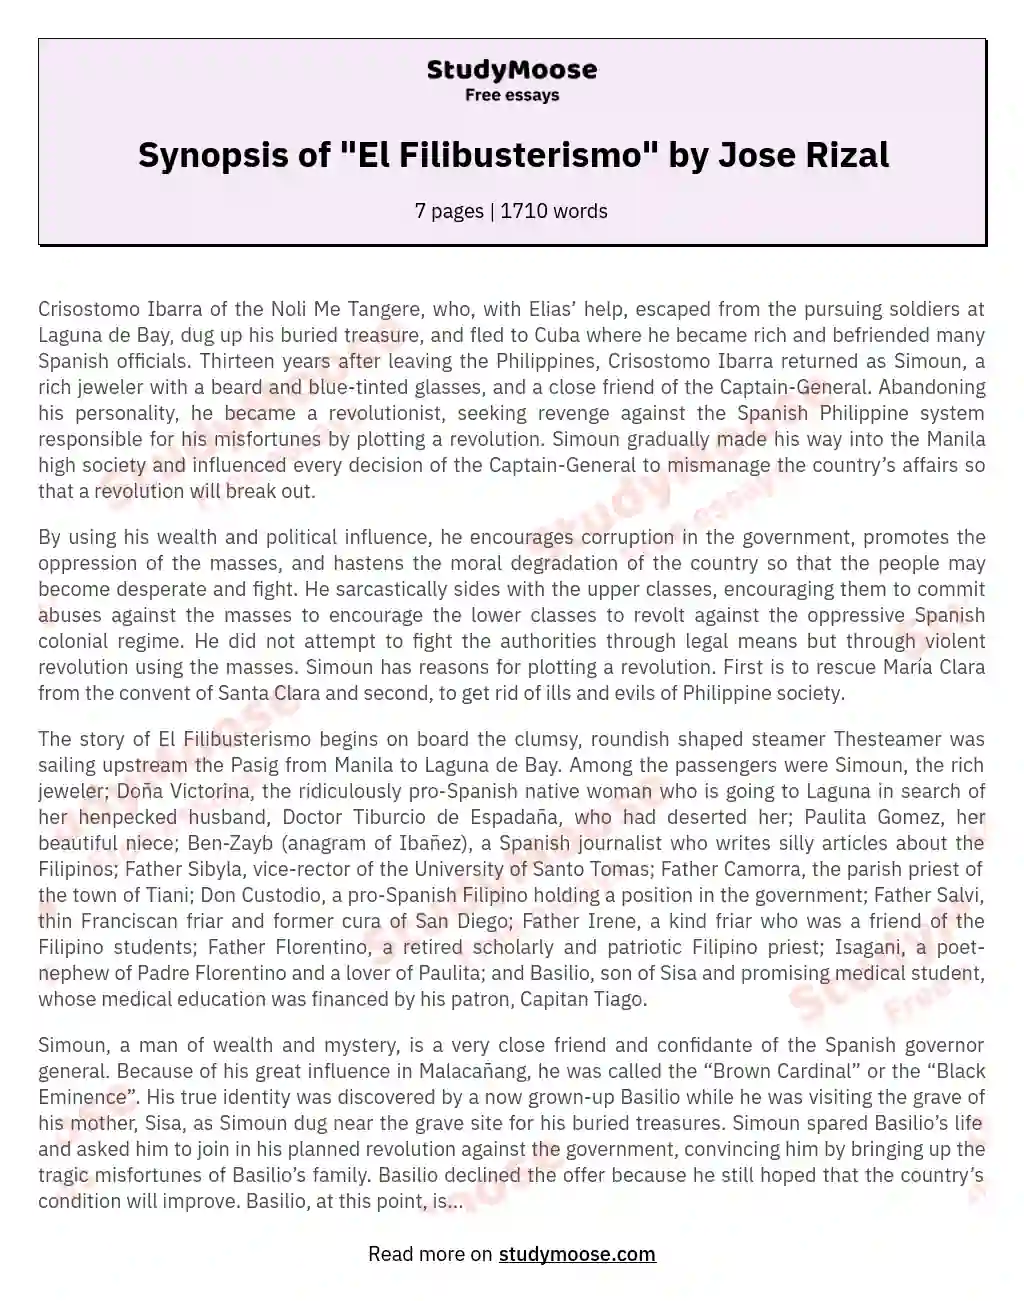 Synopsis of "El Filibusterismo" by Jose Rizal essay